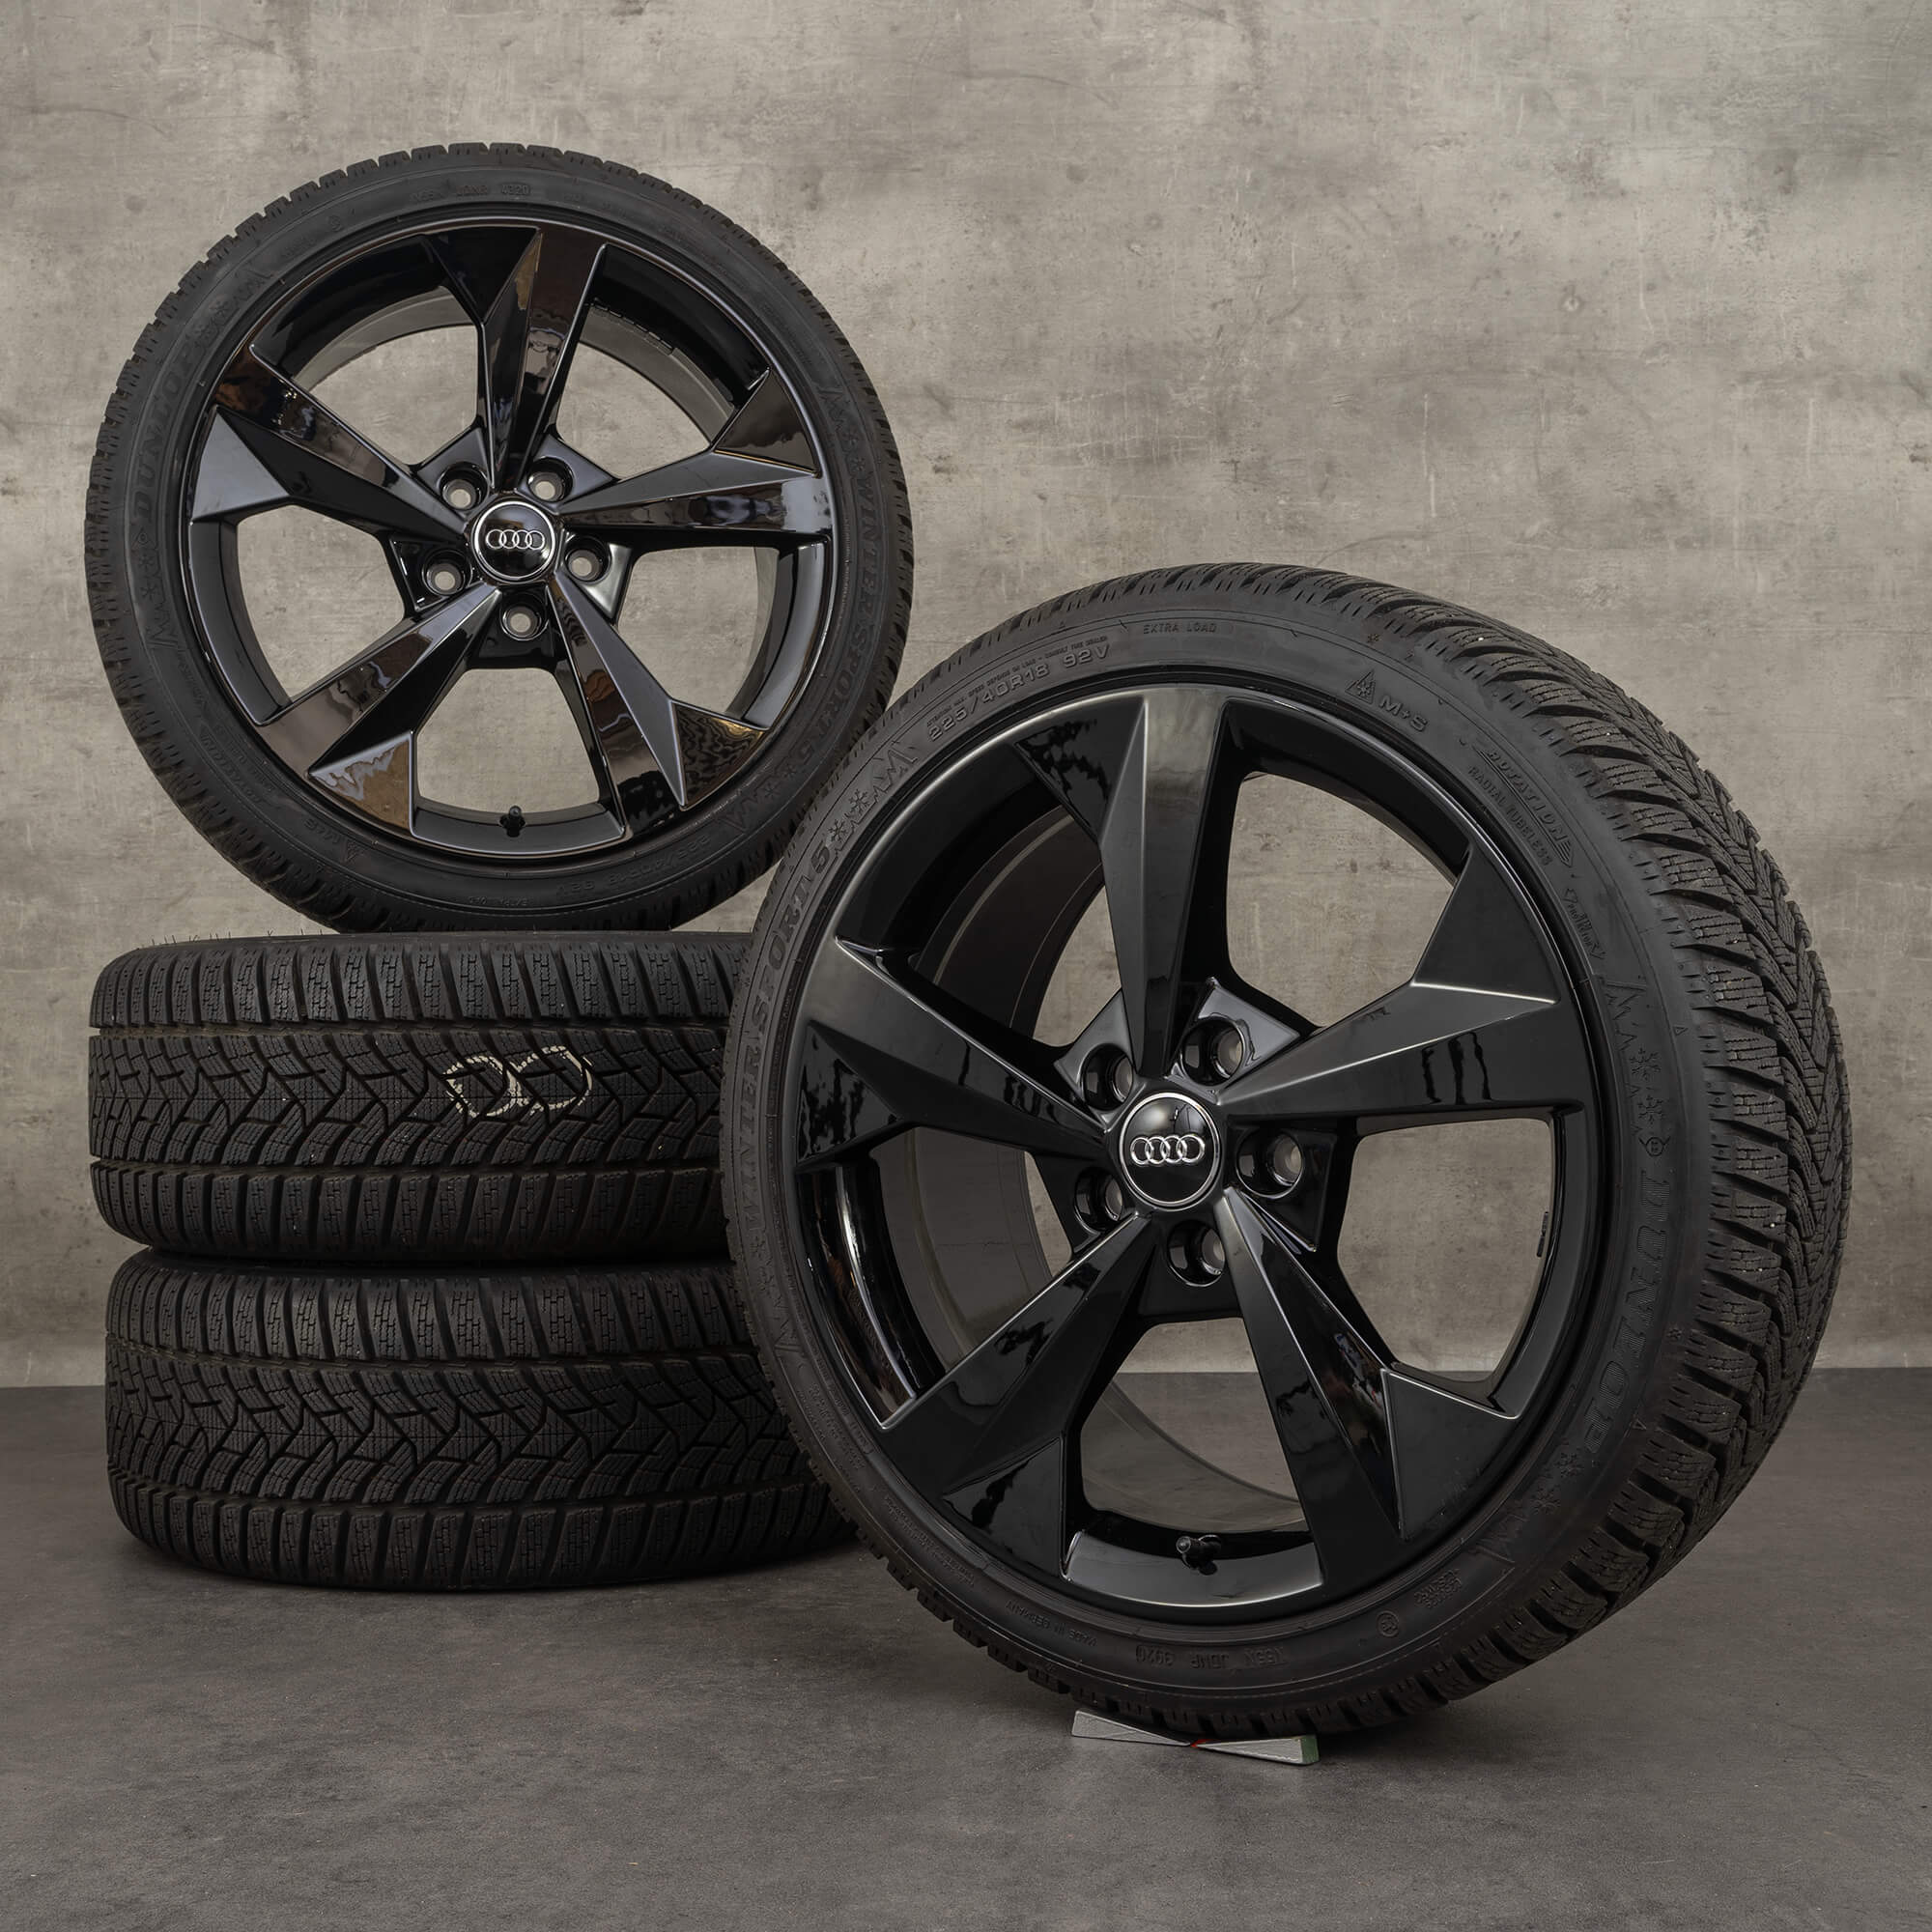 Audi rims wheels alloy 8Y0601025J inch tires winter A3 18 8Y winter S3 rims